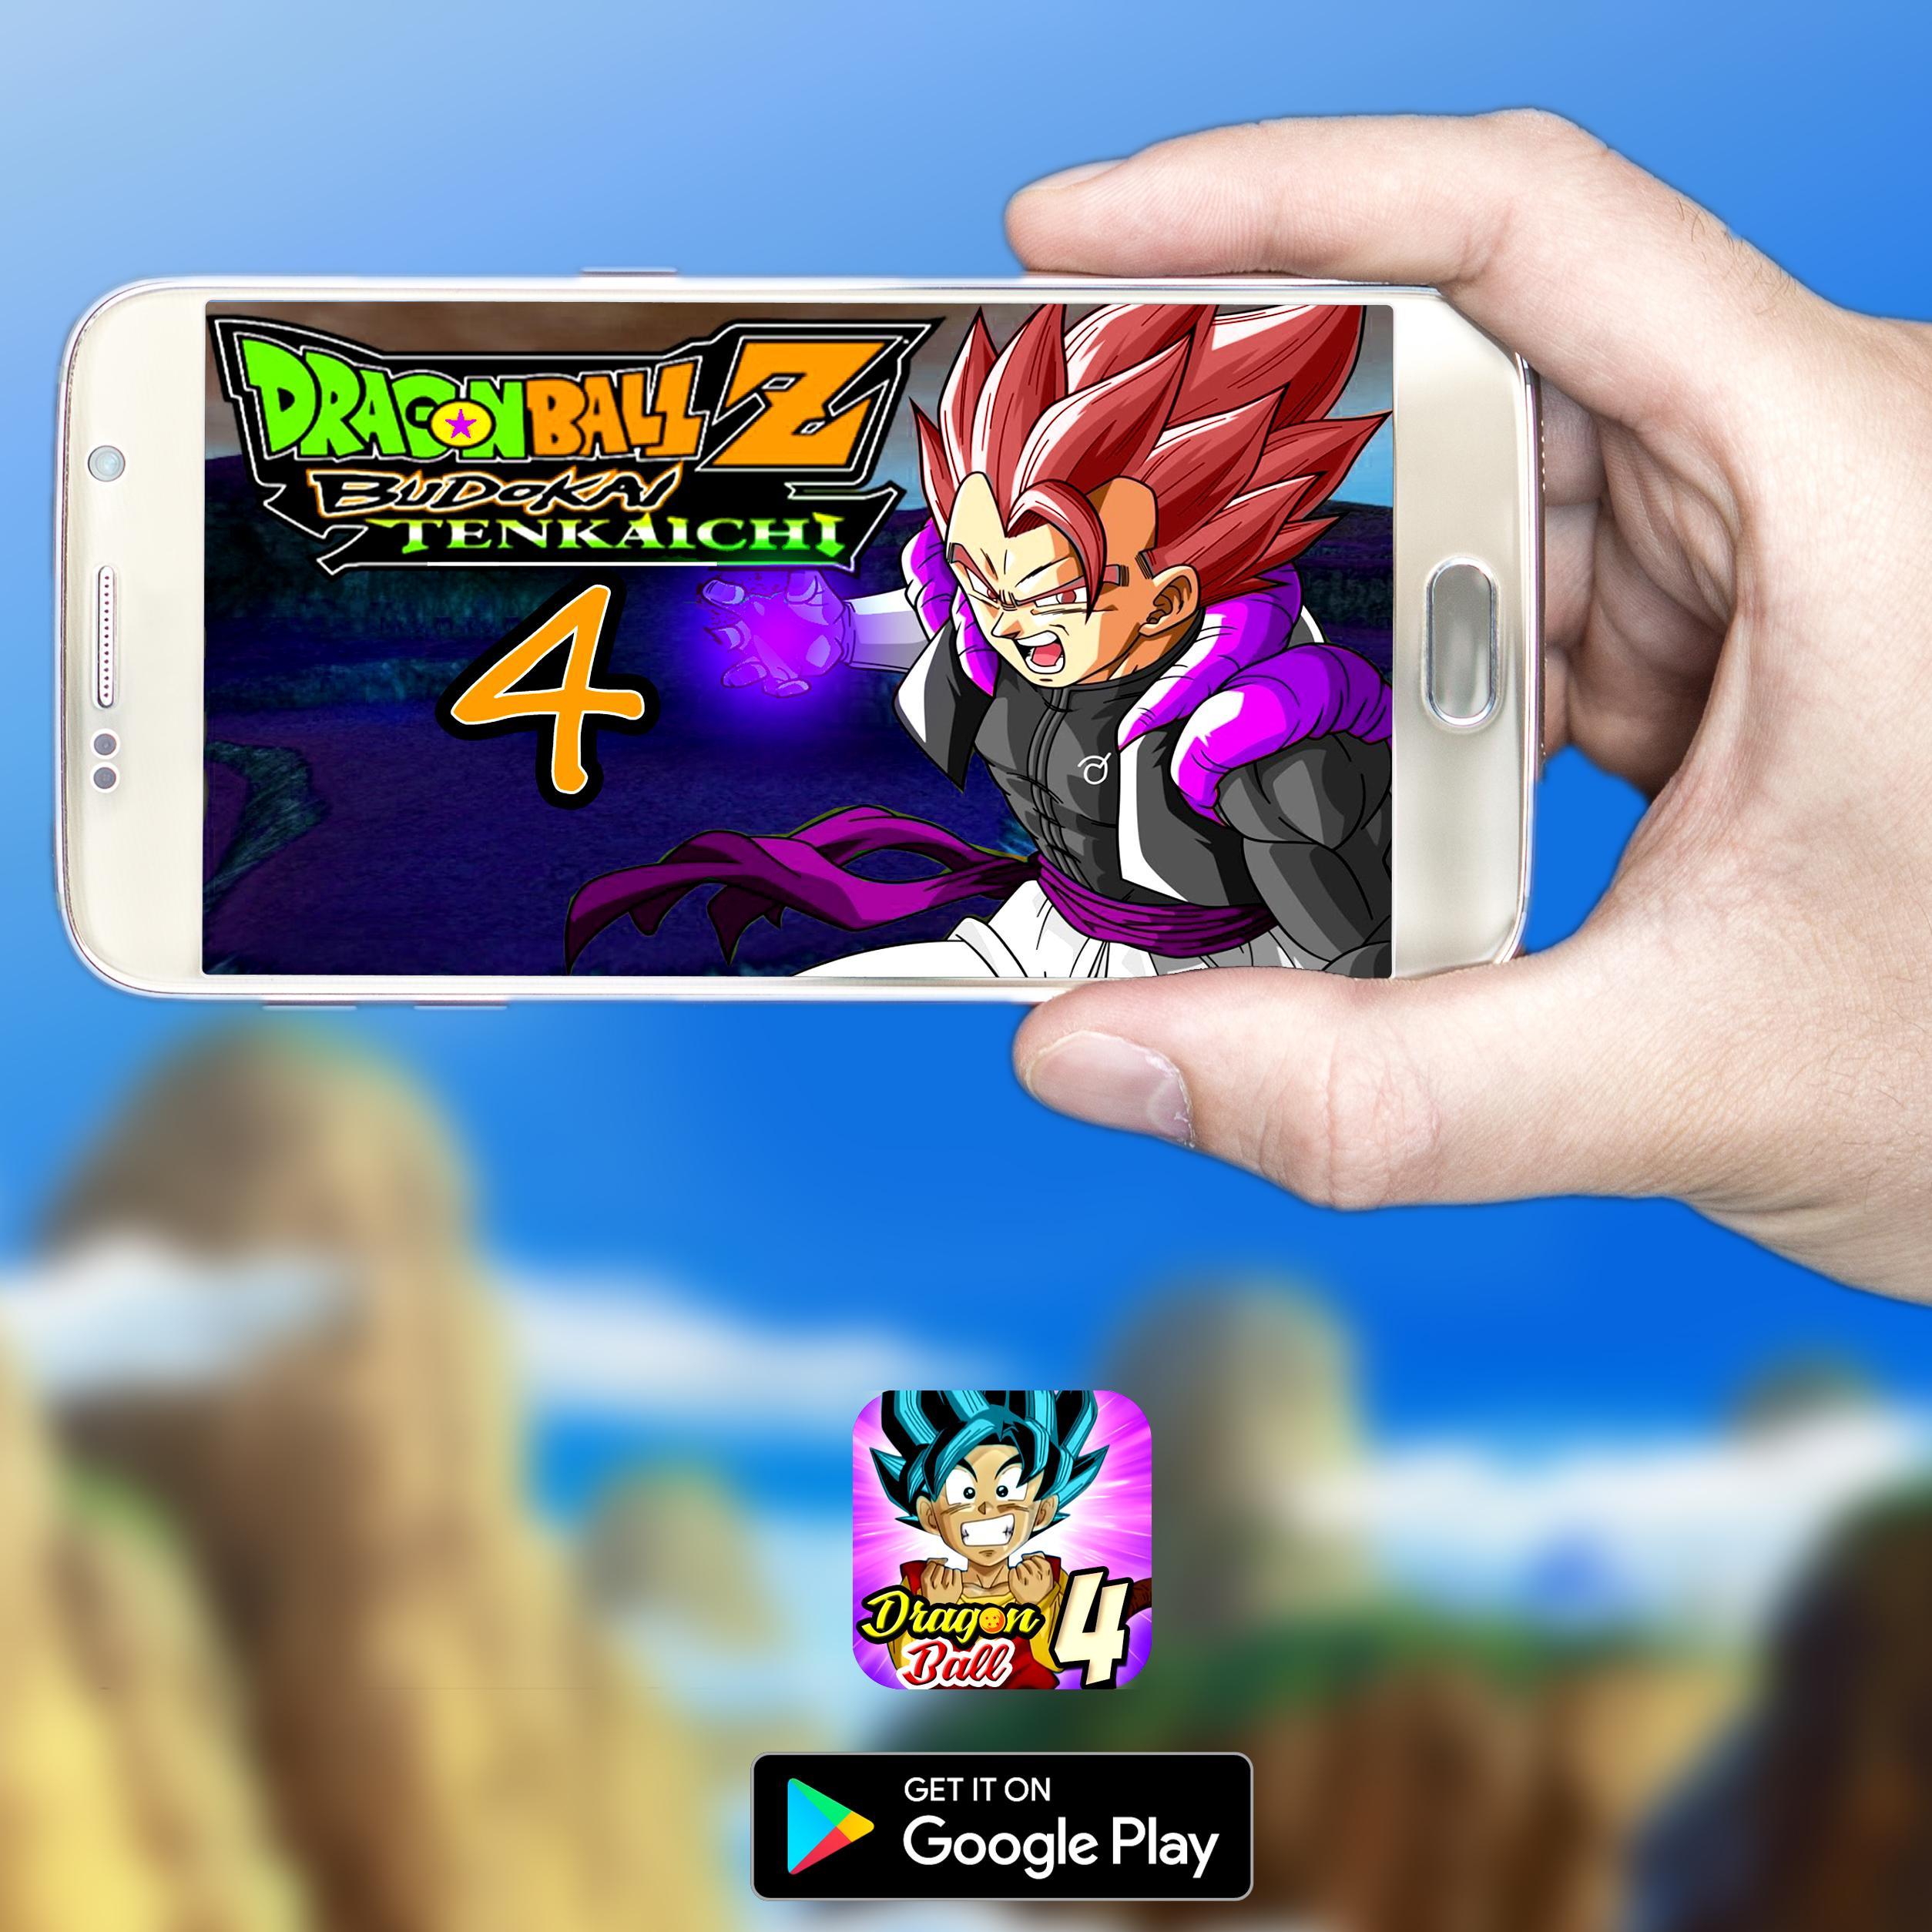 Guide Dragon Ball Z Budokai Tenkaichi 4 for Android